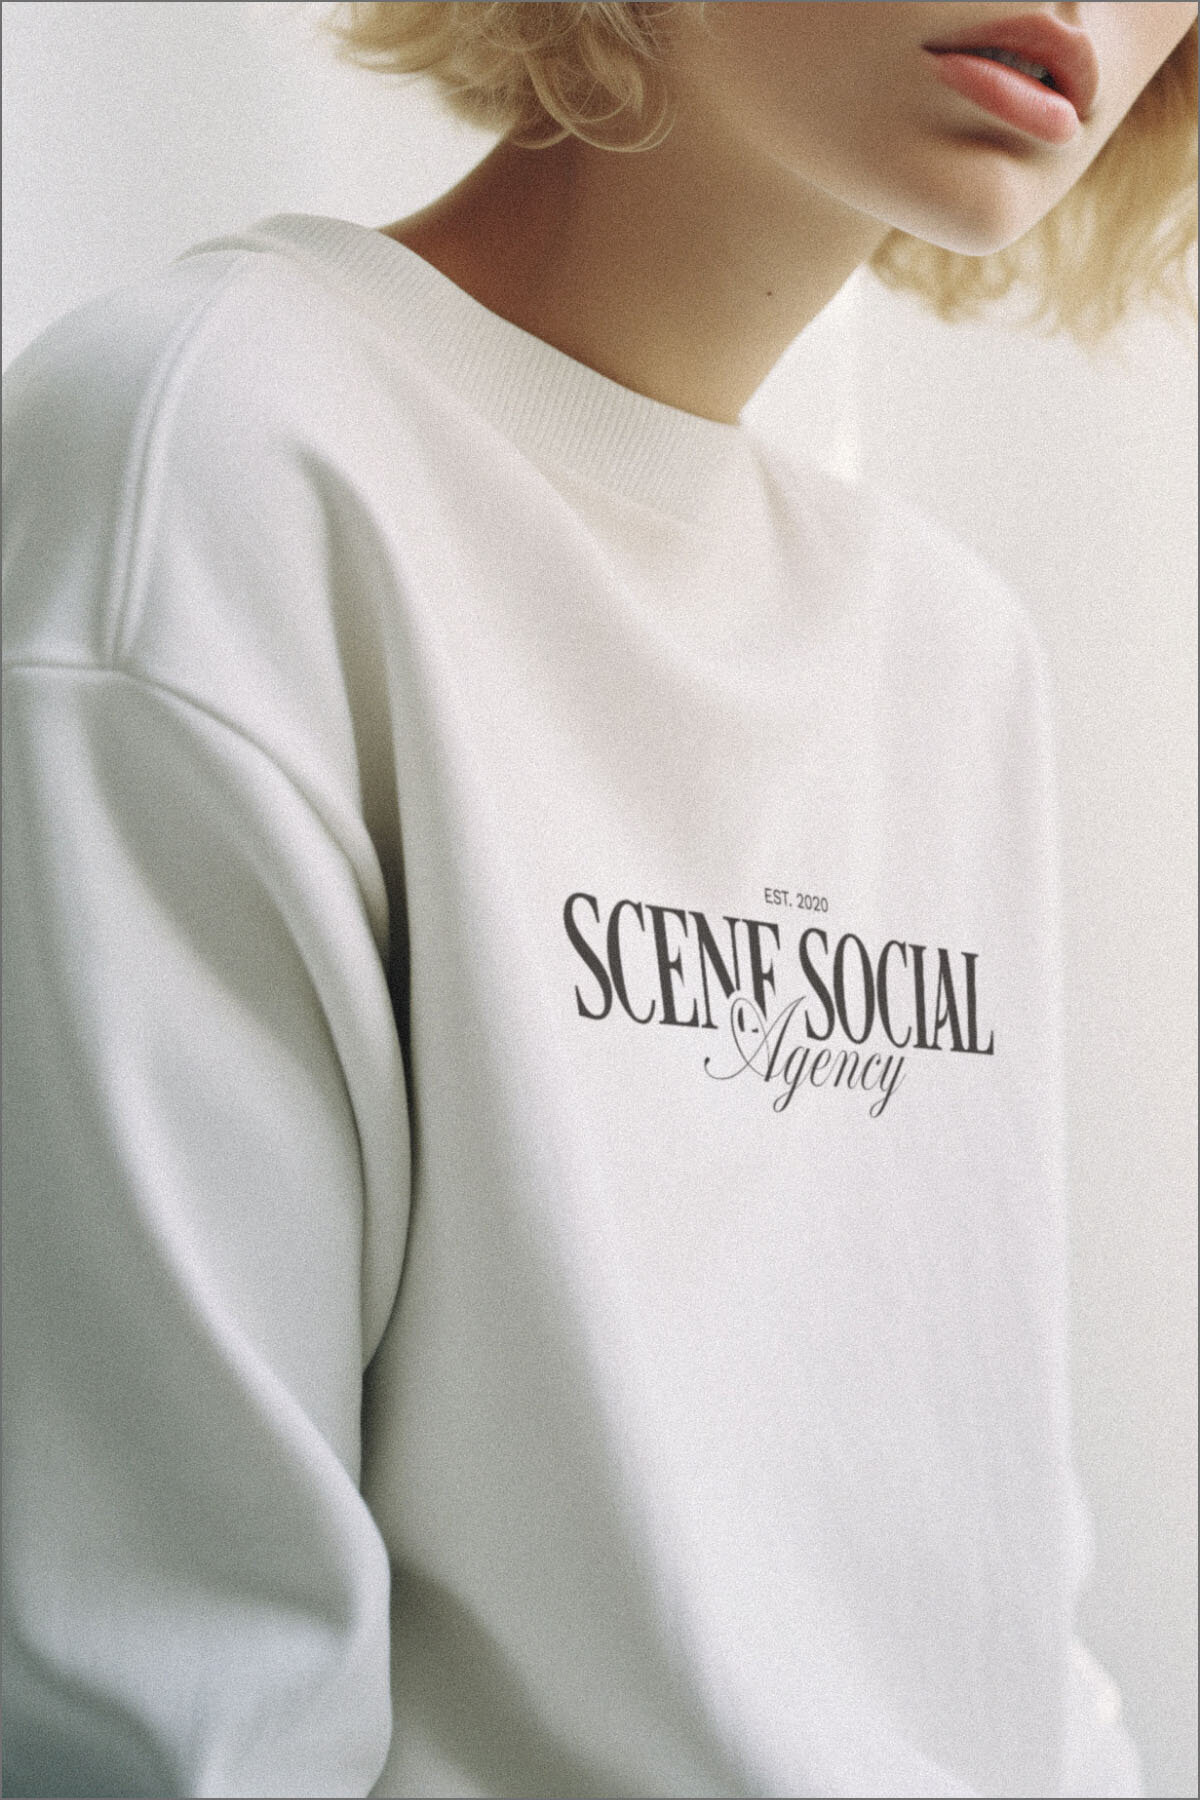 Scene Social Semi Custom Brand Kit by Cecile Creative Studio5